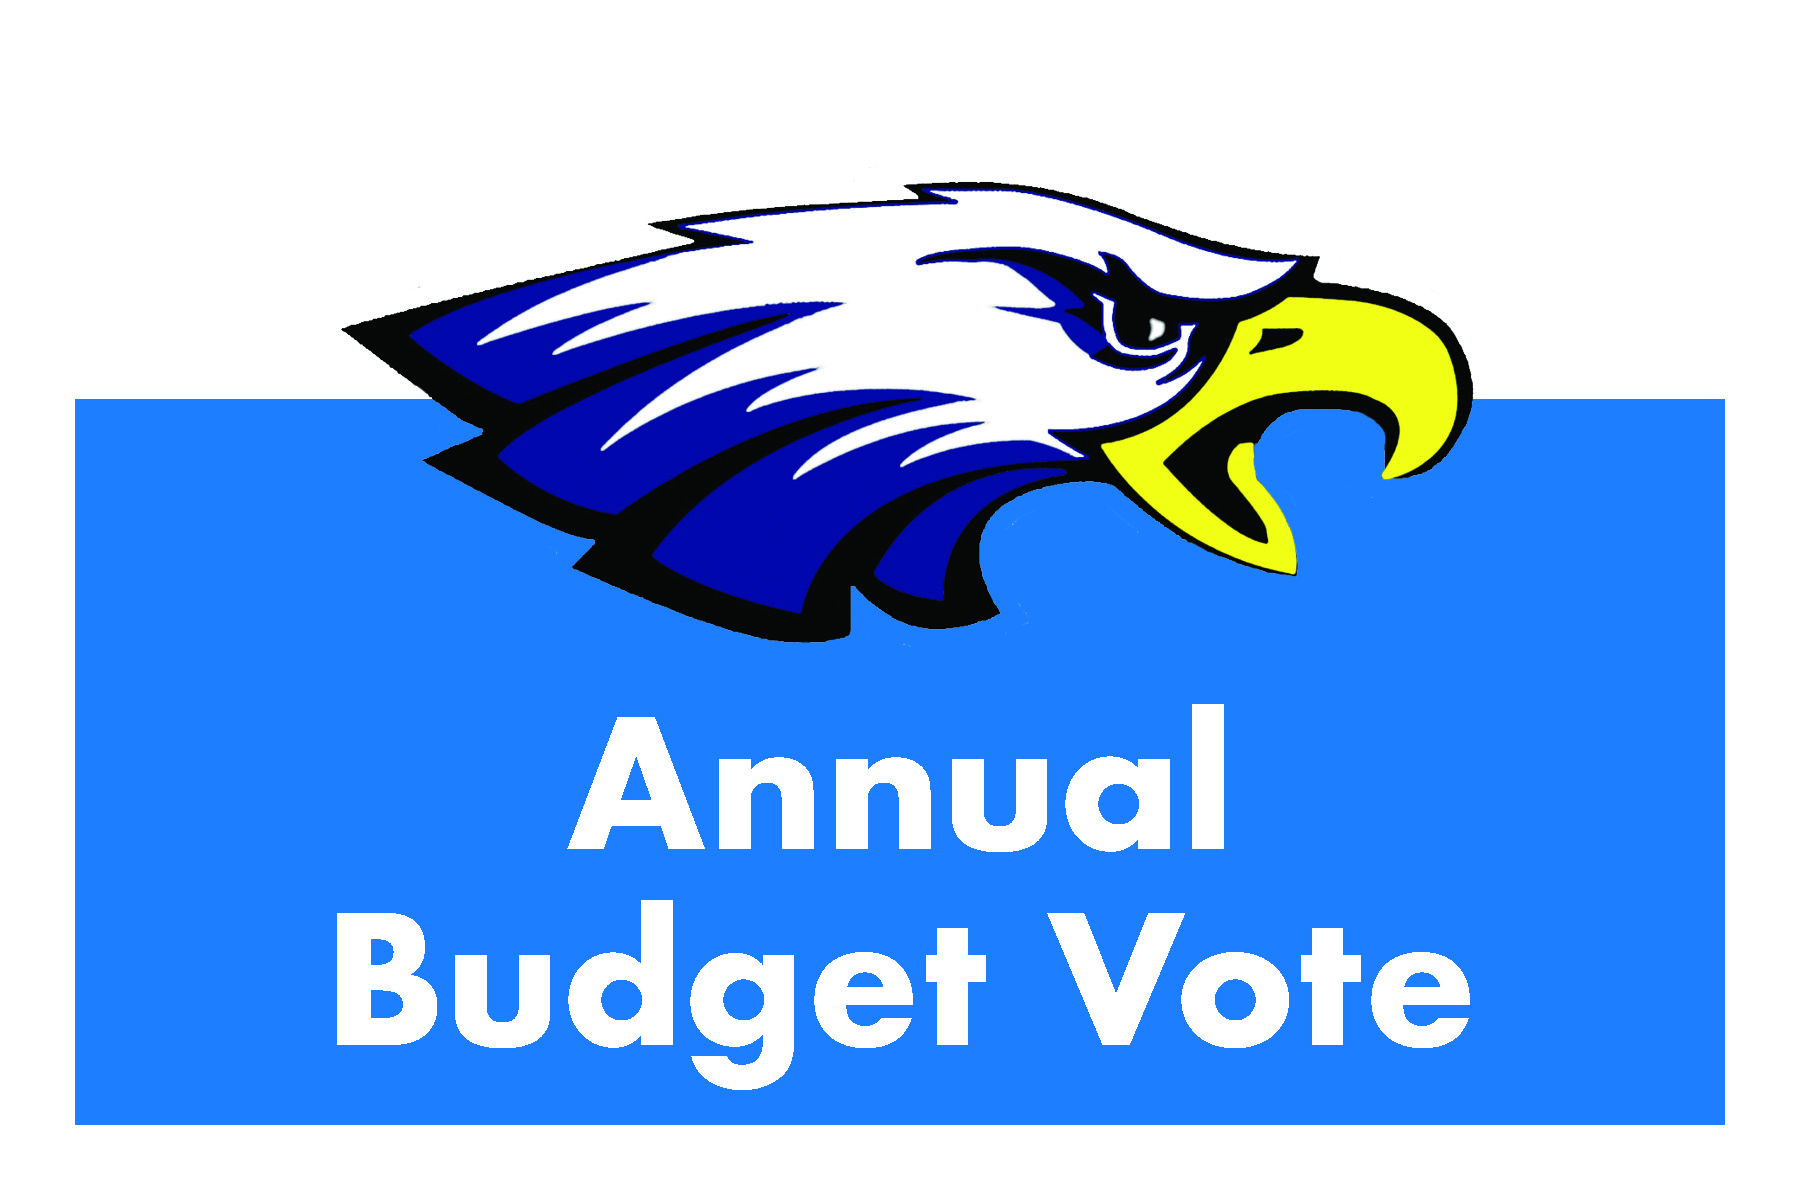 Annual Budget Vote